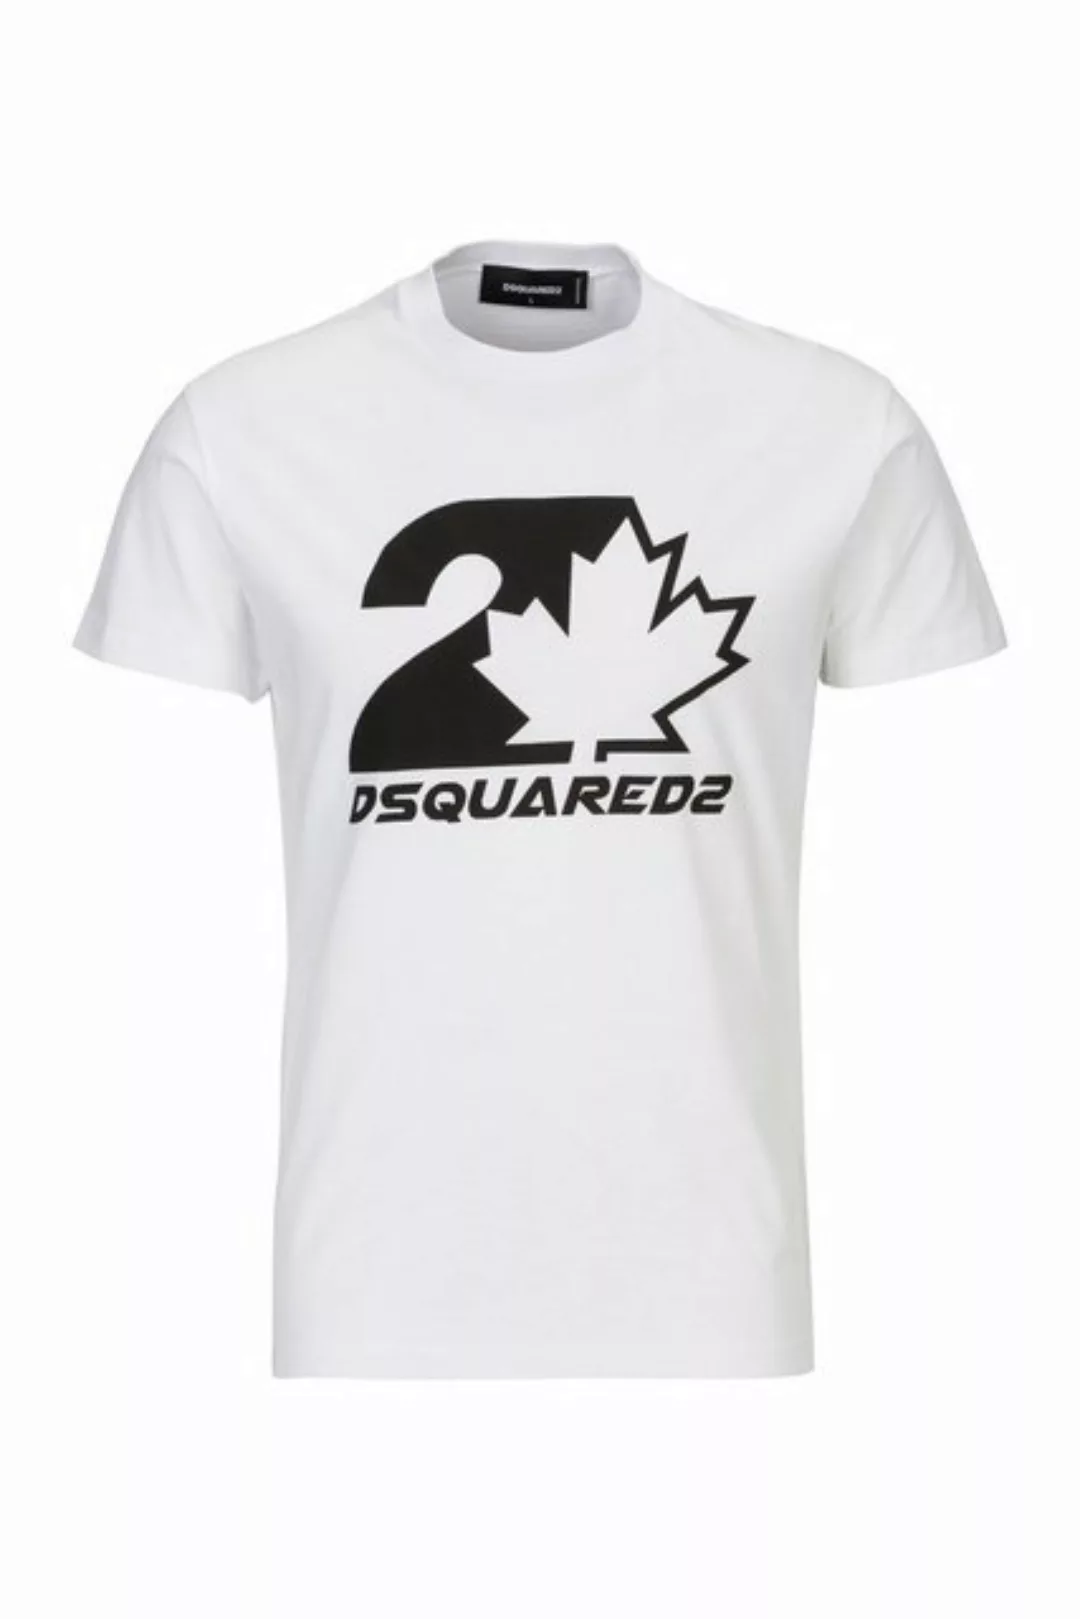 Dsquared2 T-Shirt Cool Fit Tee günstig online kaufen